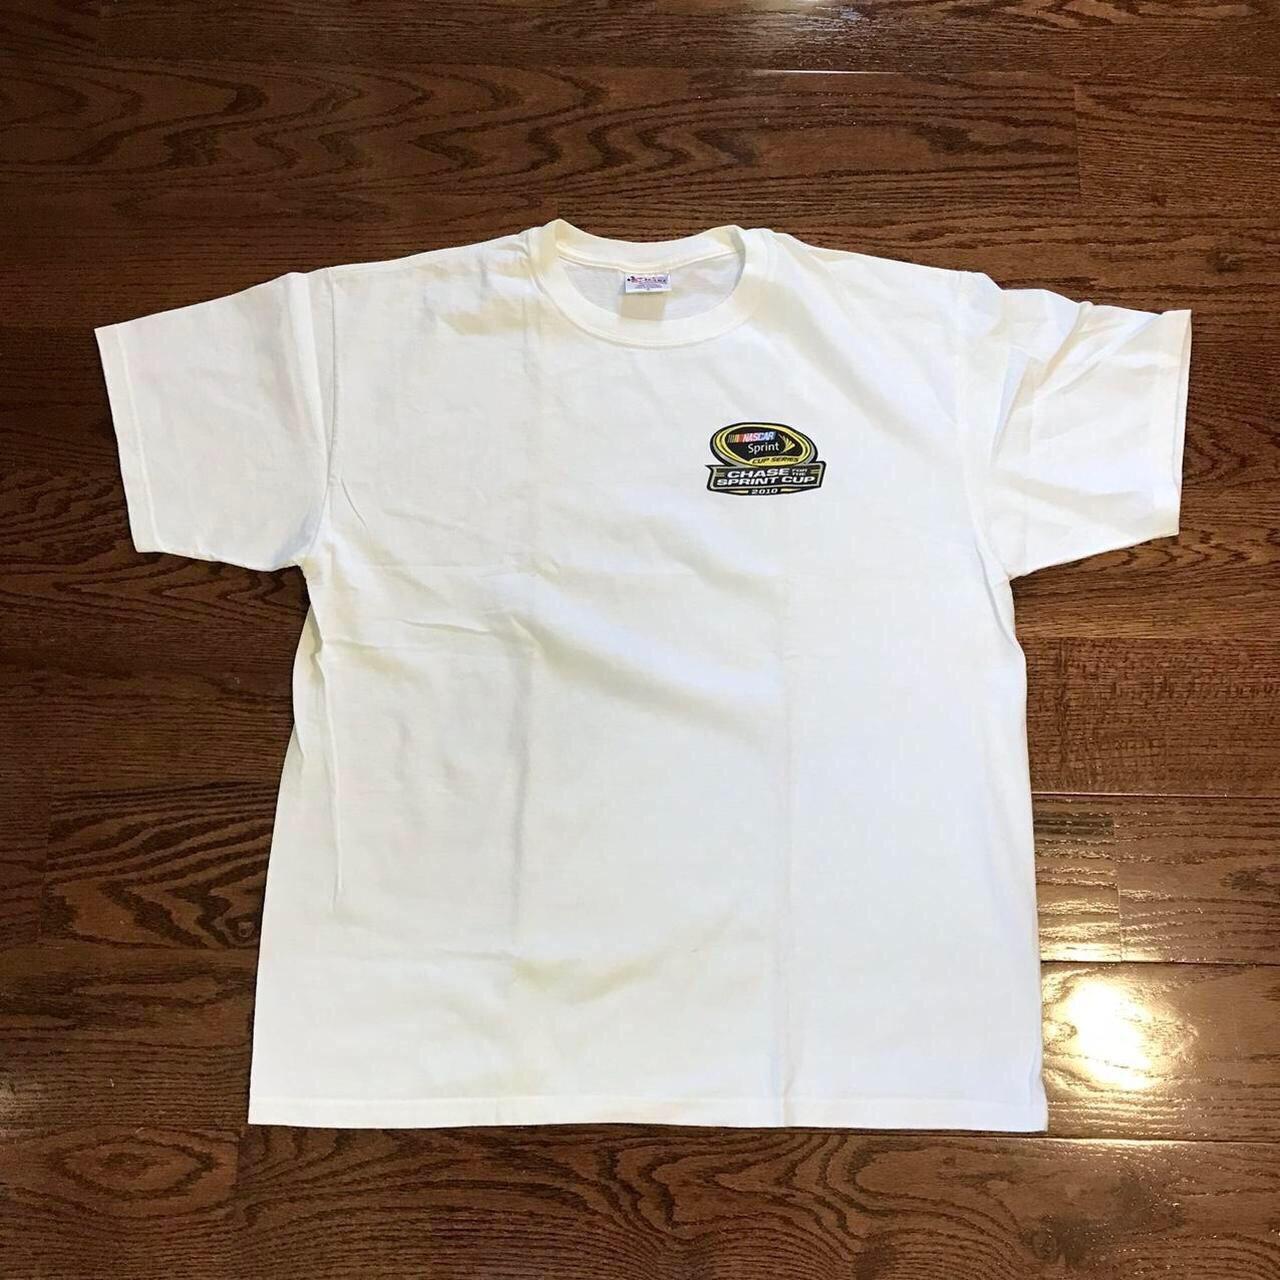 Chase Authentics Men's White T-shirt (2)